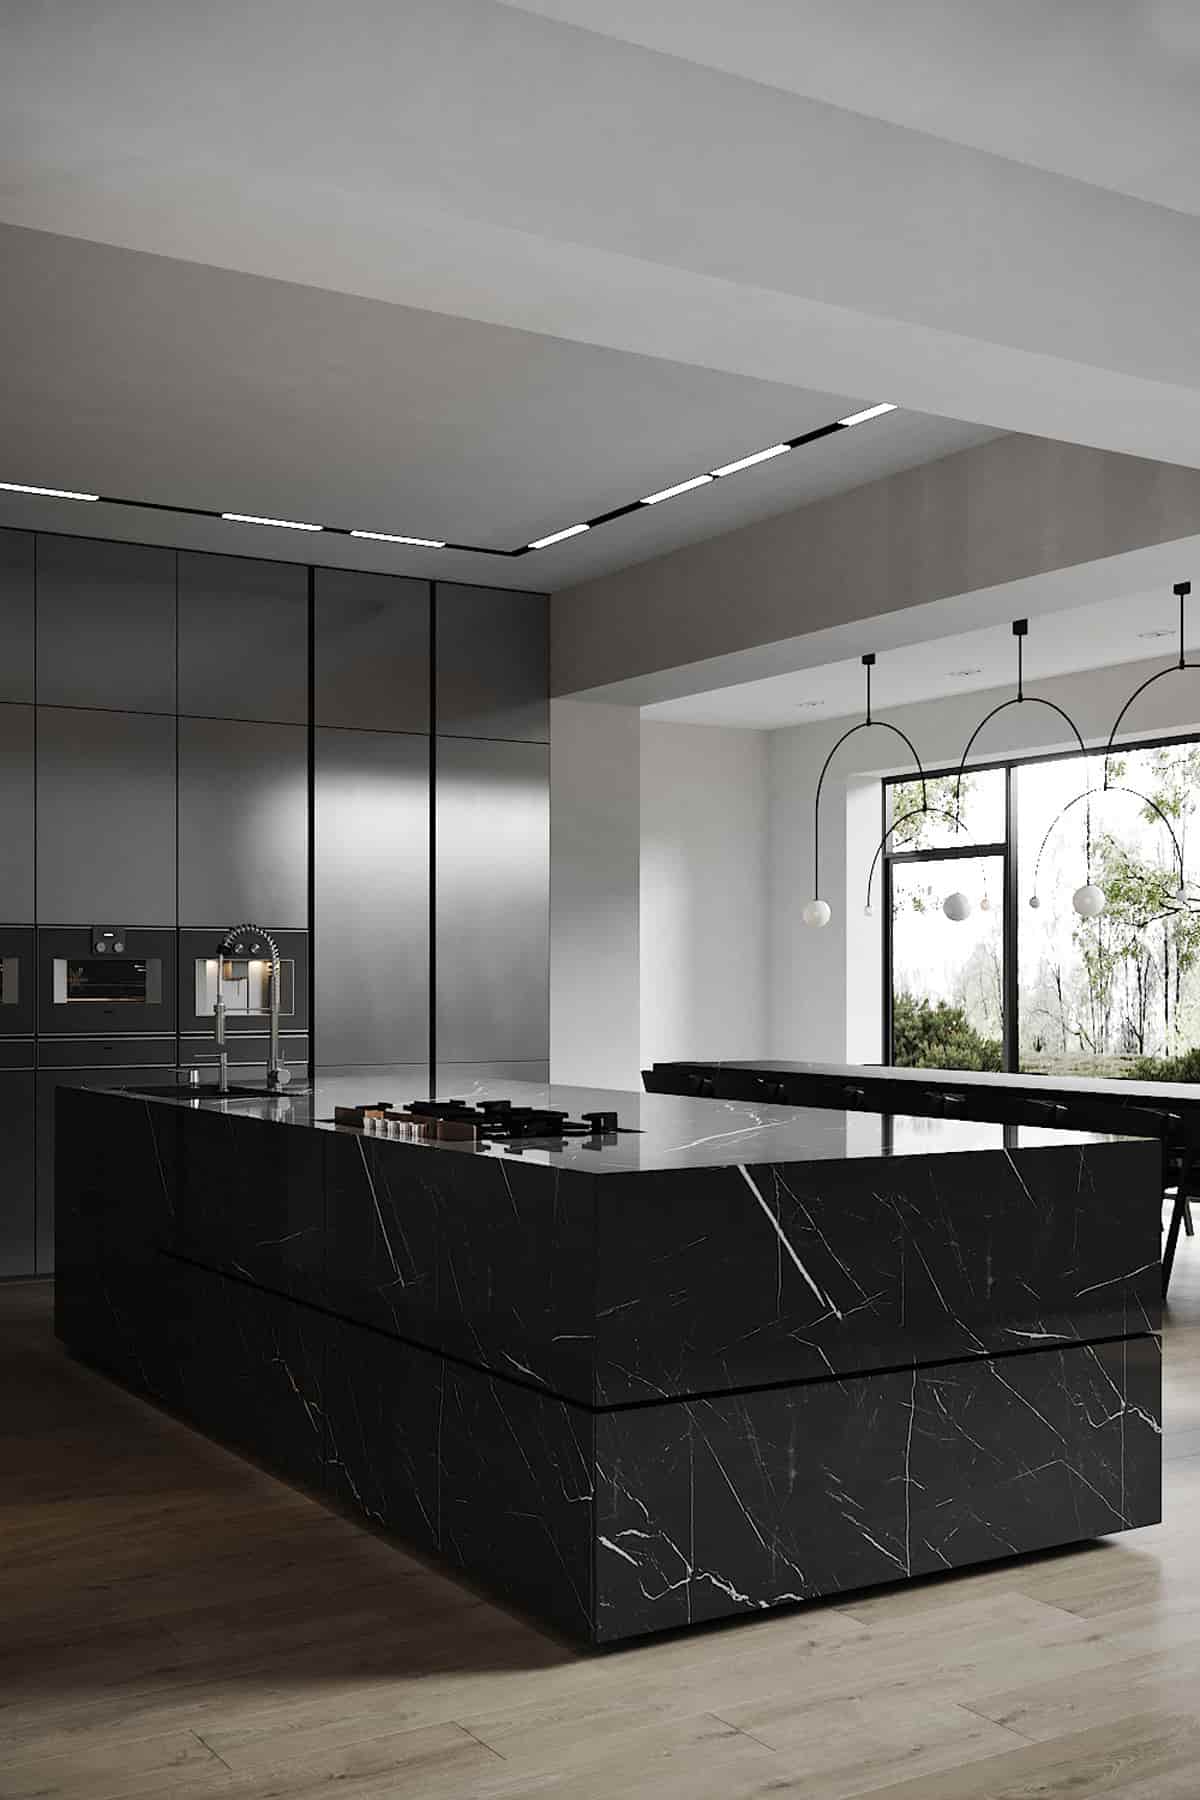 25 Black Kitchen Design Ideas Creating Balanced Interior